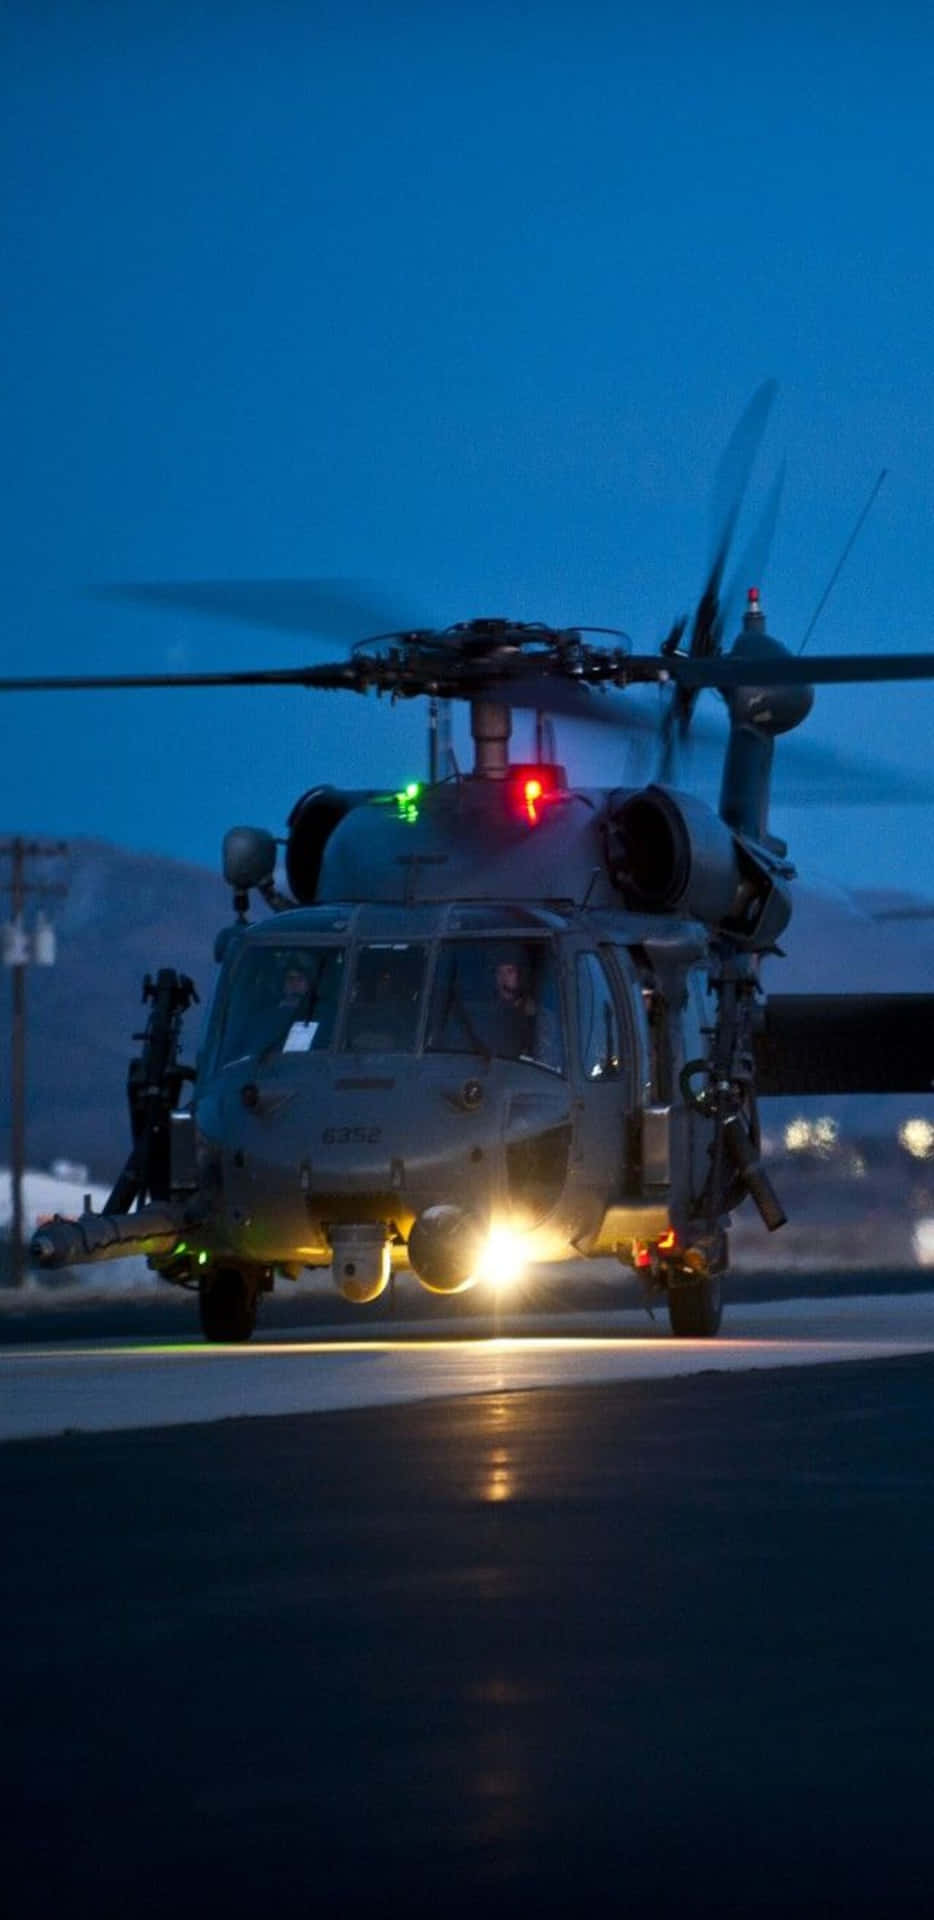 Pixel 3xl Helicopter Baggrund Sikorsky UH-60 Black Hawk om Natten.